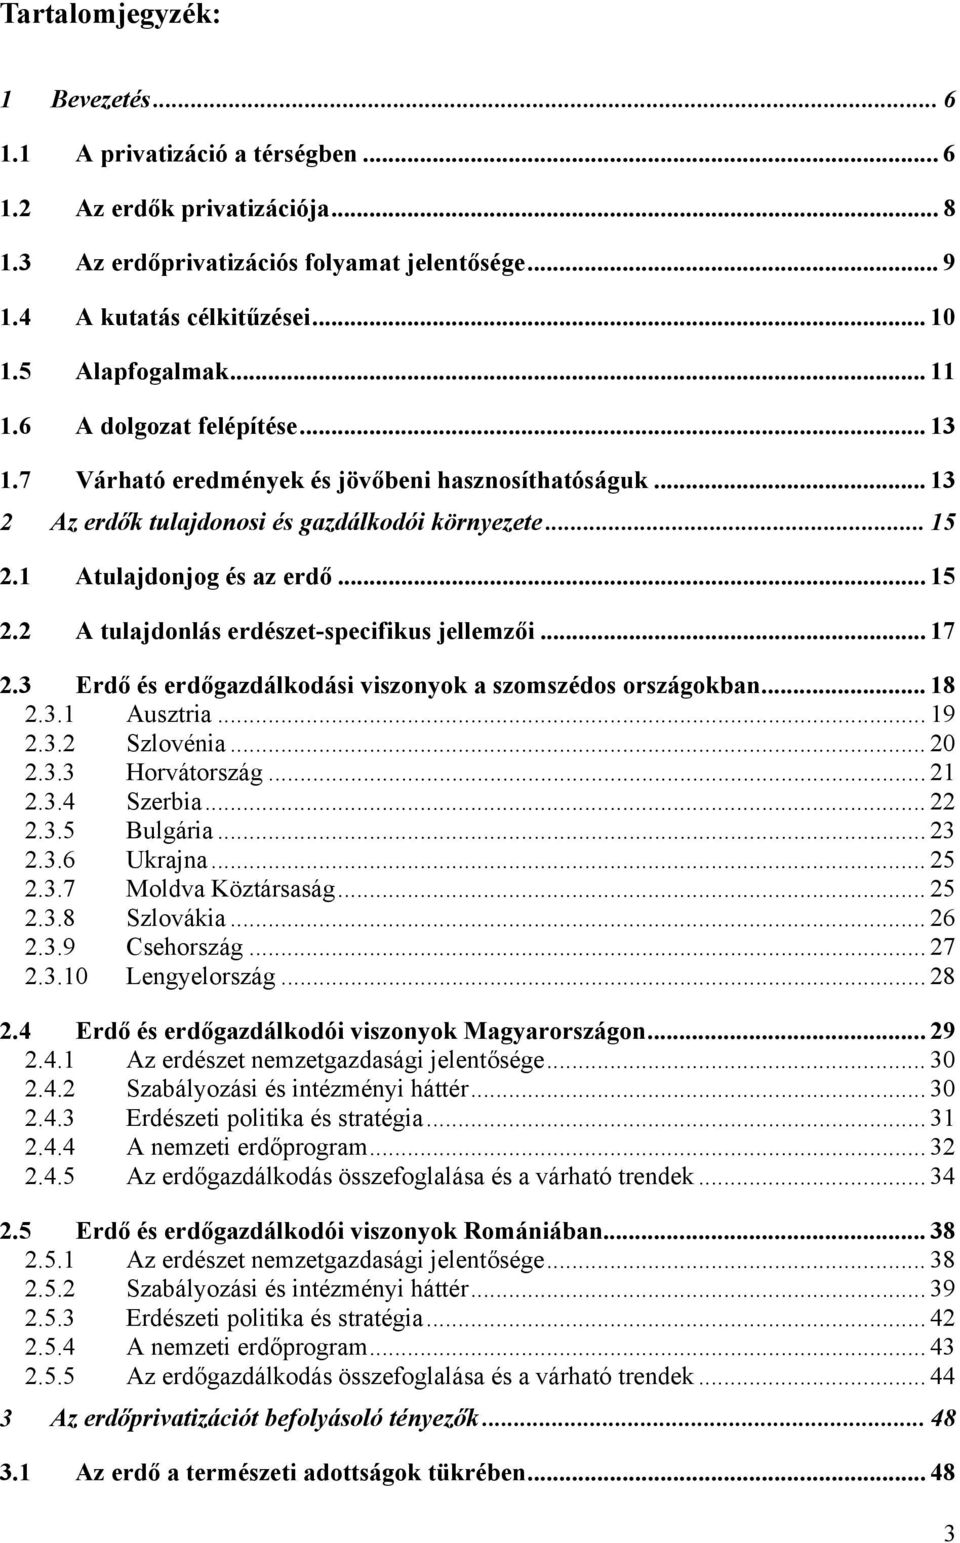 .. 15 2.2 A tulajdonlás erdészet-specifikus jellemzői... 17 2.3 Erdő és erdőgazdálkodási viszonyok a szomszédos országokban... 18 2.3.1 Ausztria... 19 2.3.2 Szlovénia... 20 2.3.3 Horvátország... 21 2.